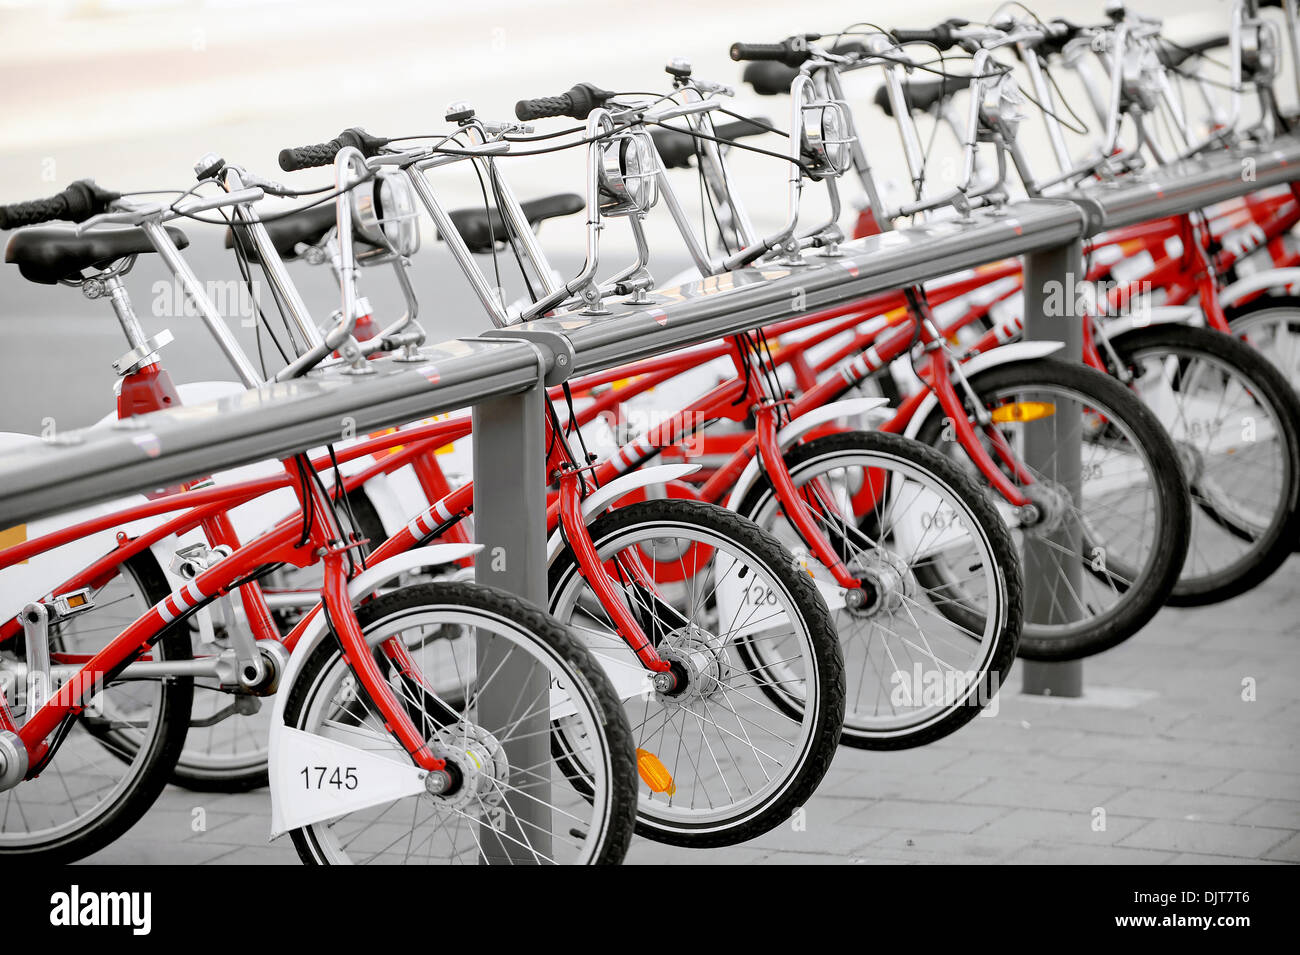 Plusieurs vélos à louer sont vus dans une station velo Banque D'Images